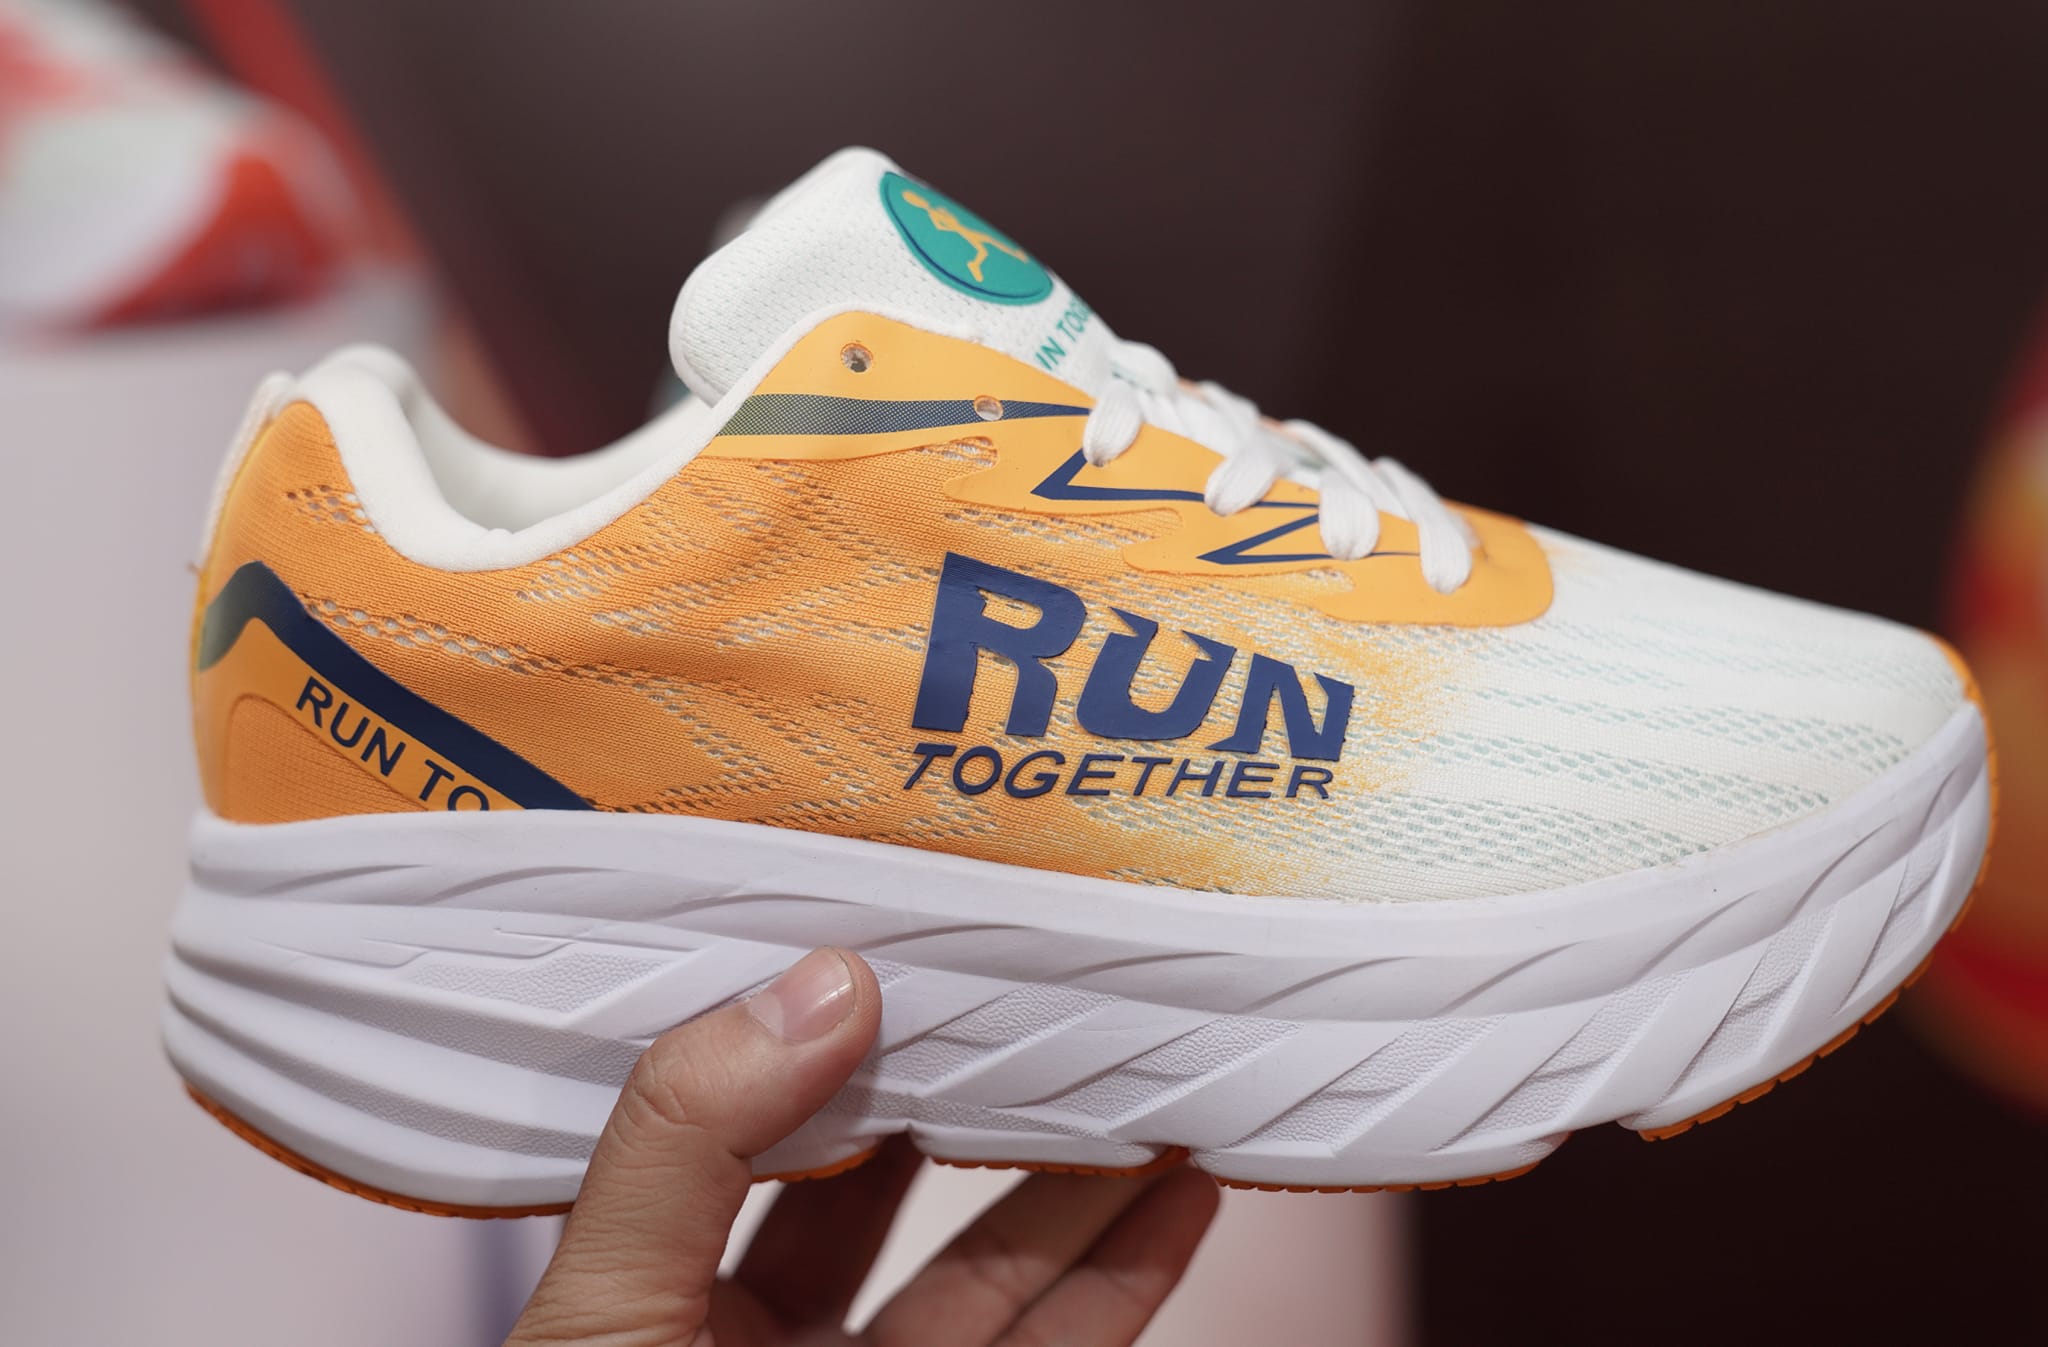 RUN Together, thương hiệu giày Việt nam ra mắt giày chạy bộ gắn chip NFC - run together